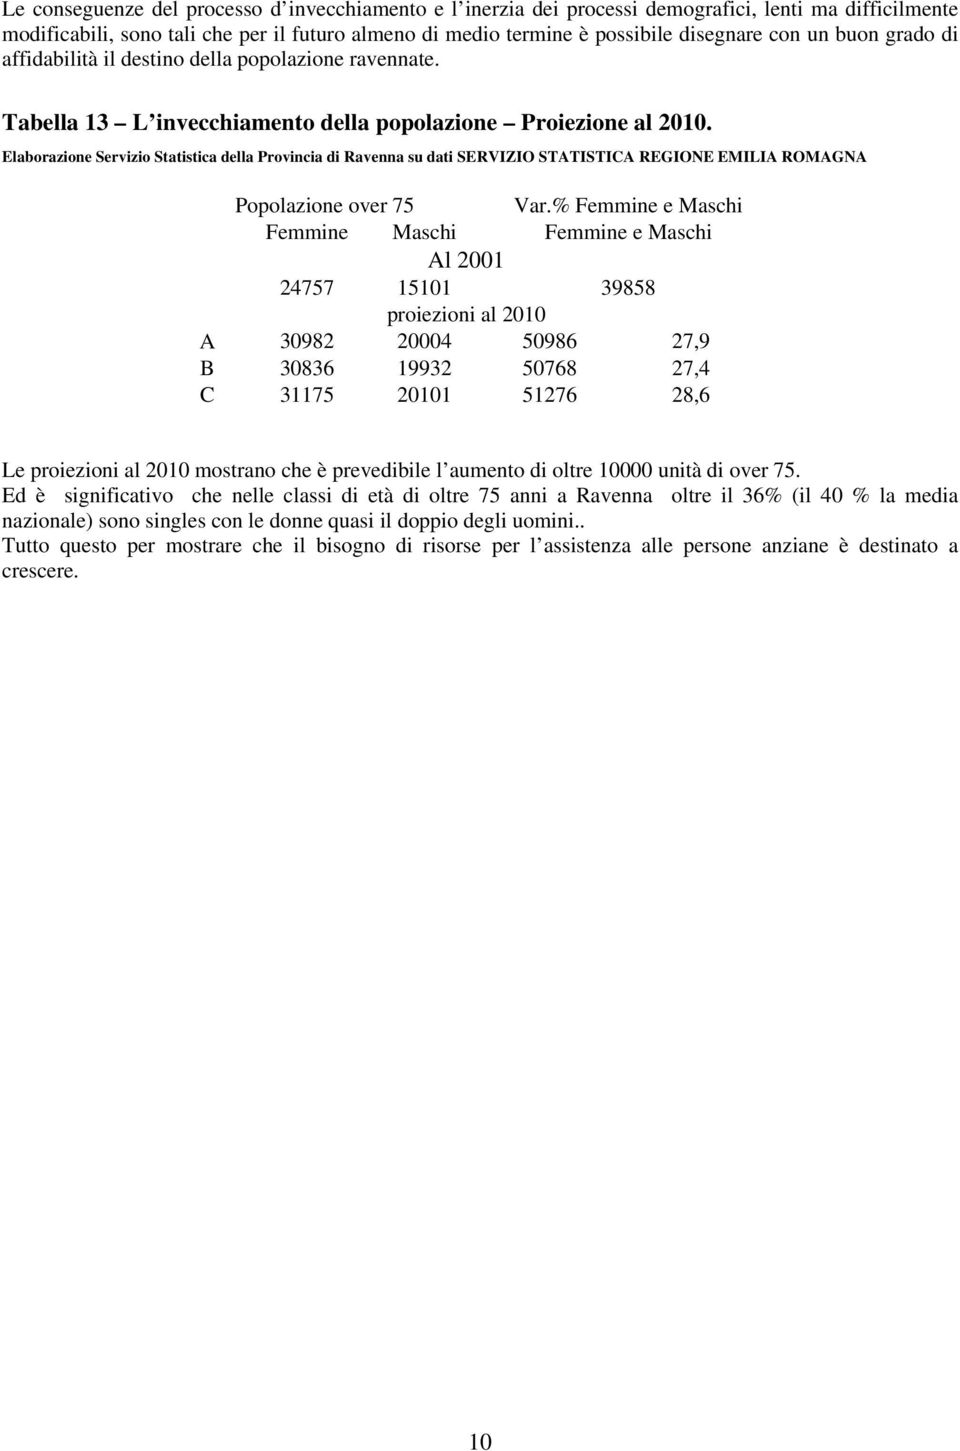 Elaborazione Servizio Statistica della Provincia di Ravenna su dati SERVIZIO STATISTICA REGIONE EMILIA ROMAGNA Popolazione over 75 Var.